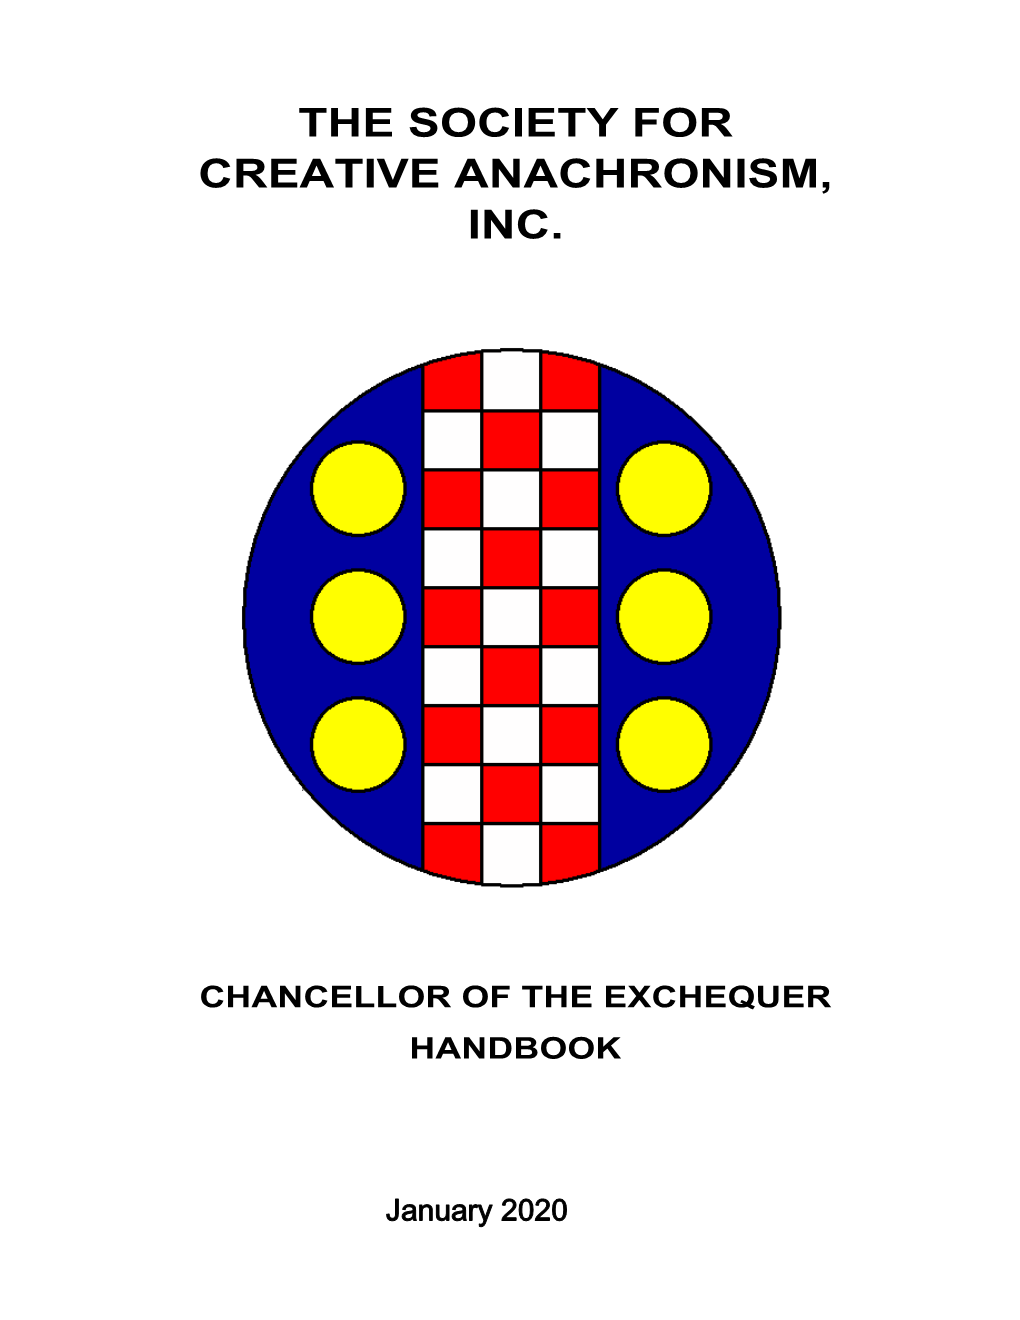 Exchequer's Handbook